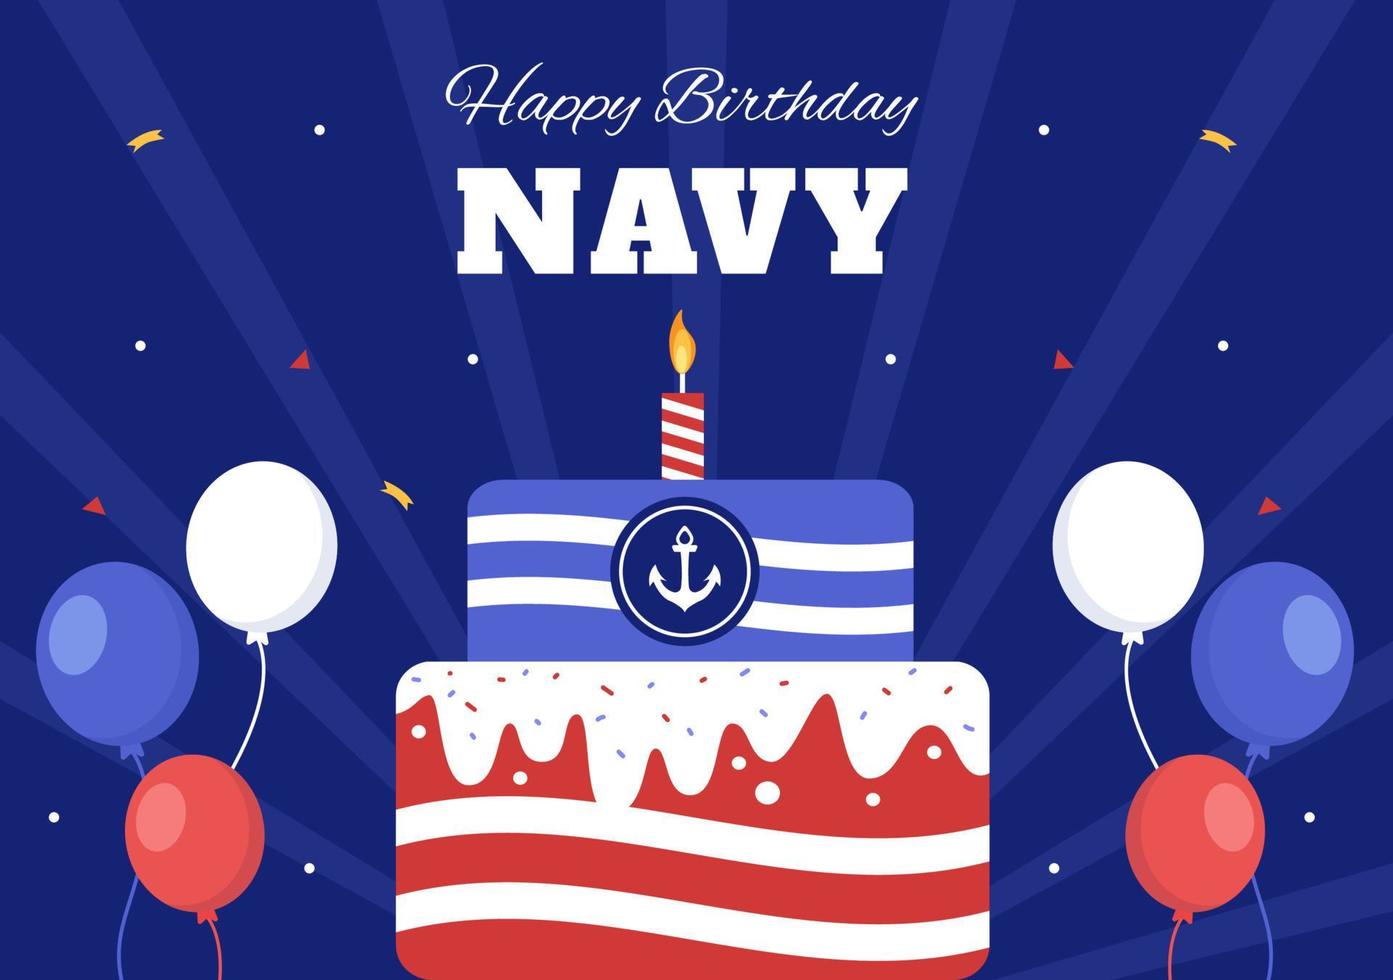 cumpleaños de la marina estadounidense el 13 de octubre ilustración plana de dibujos animados dibujados a mano adecuada para carteles, pancartas y tarjetas de felicitación en estilo de fondo vector